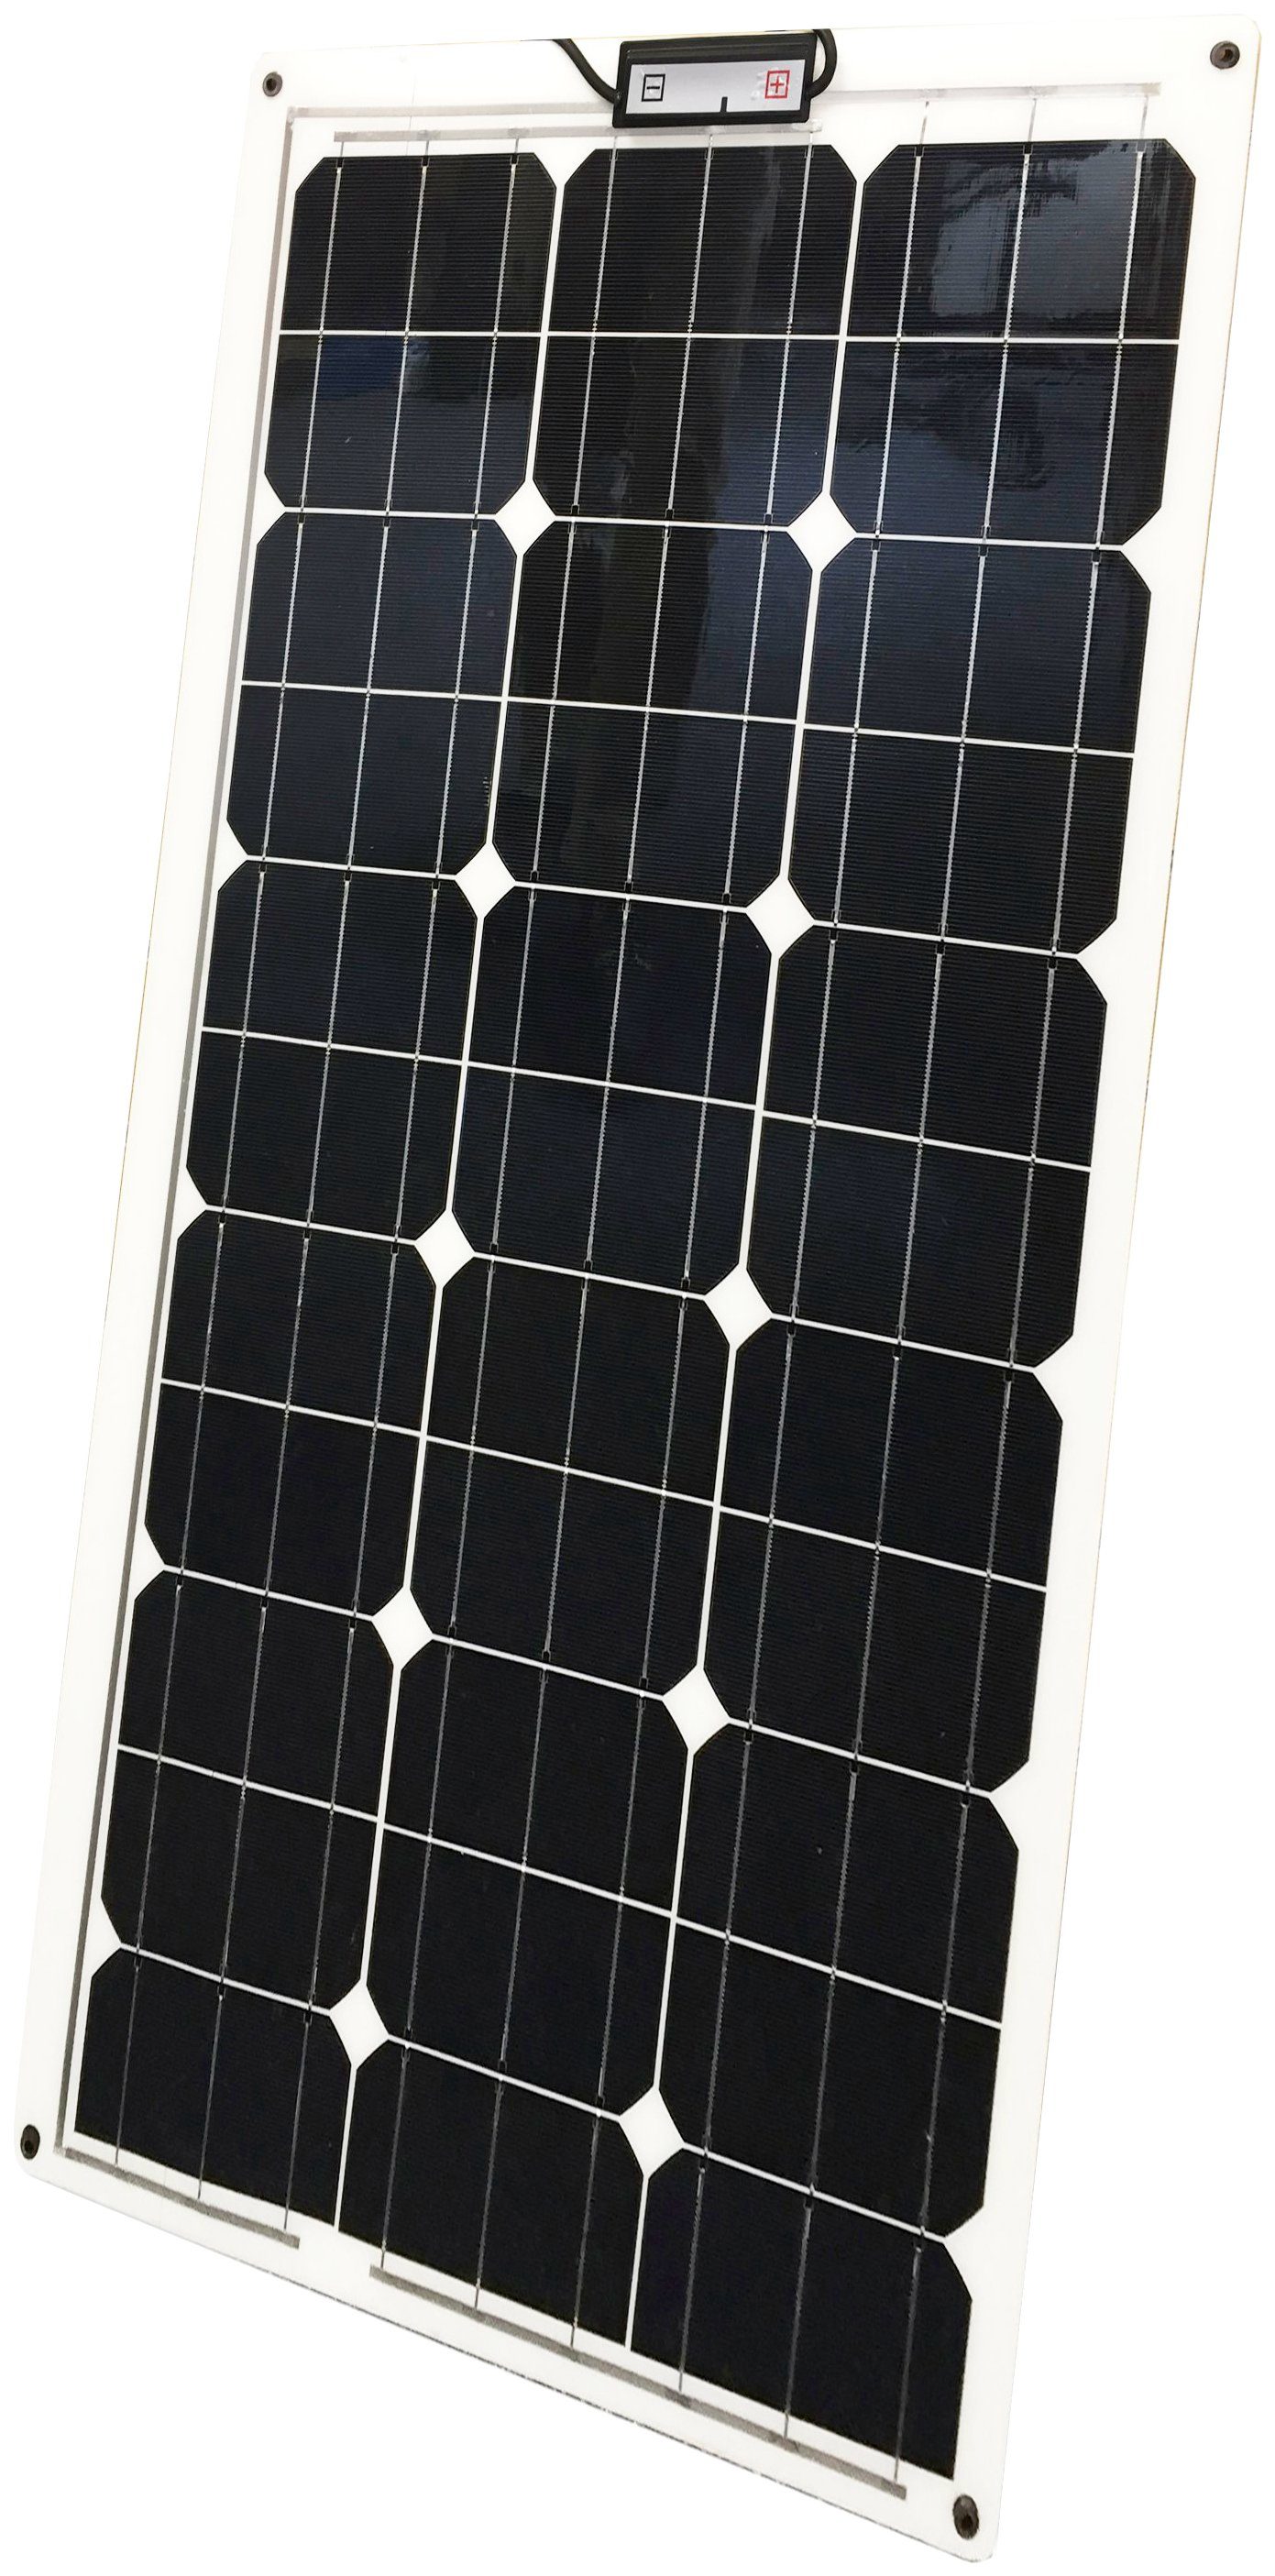 Sunset Solarmodul SM 70 L (Laminat), 70 Watt, 70 W, Polykristallin, für Boote und Yachten